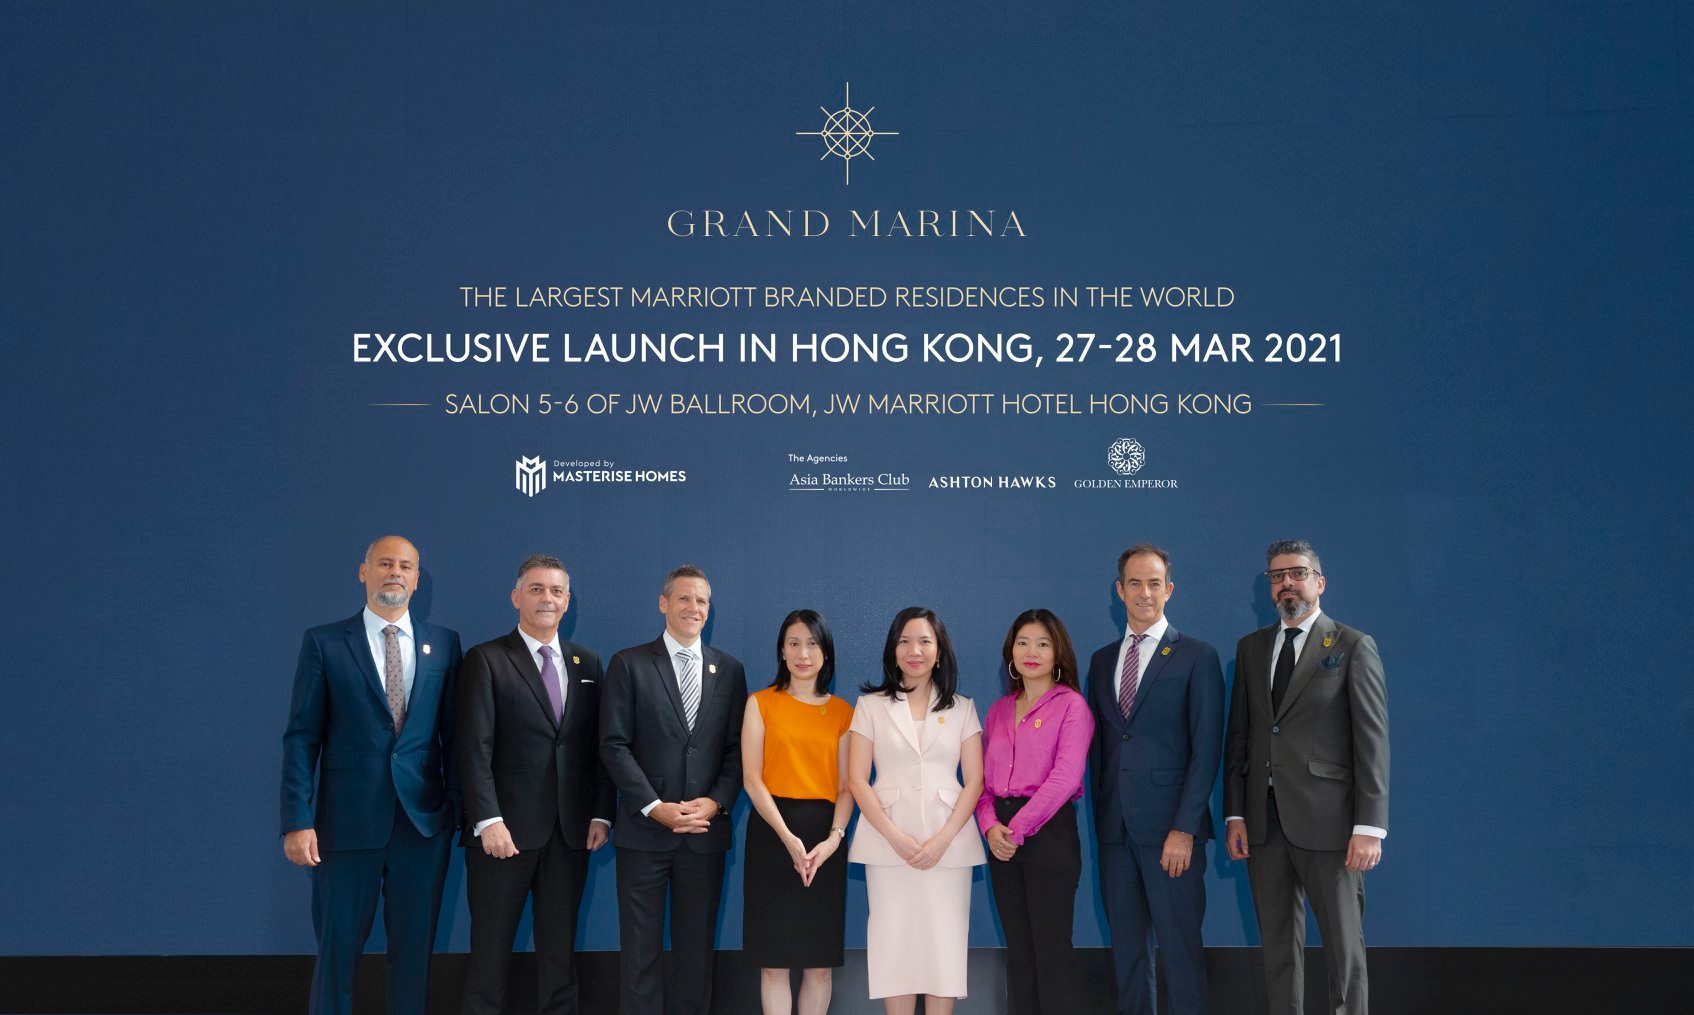 Ra mắt Grand Marina Saigon tại Hồng Kông